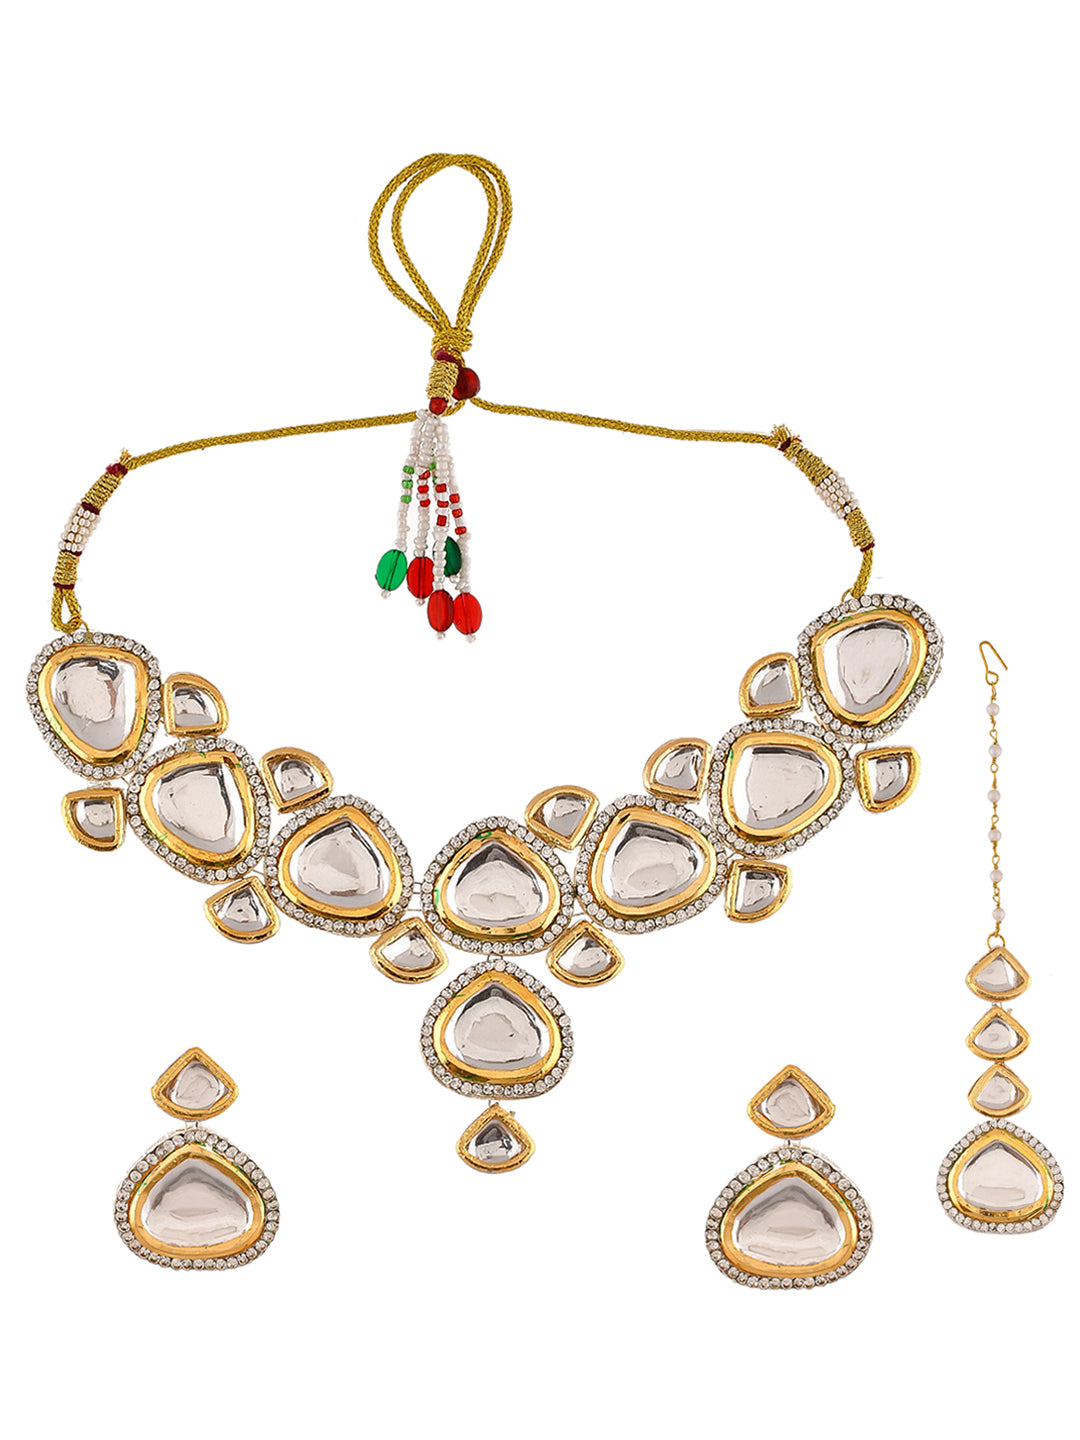 Ethnic Kundan Jewellery Set